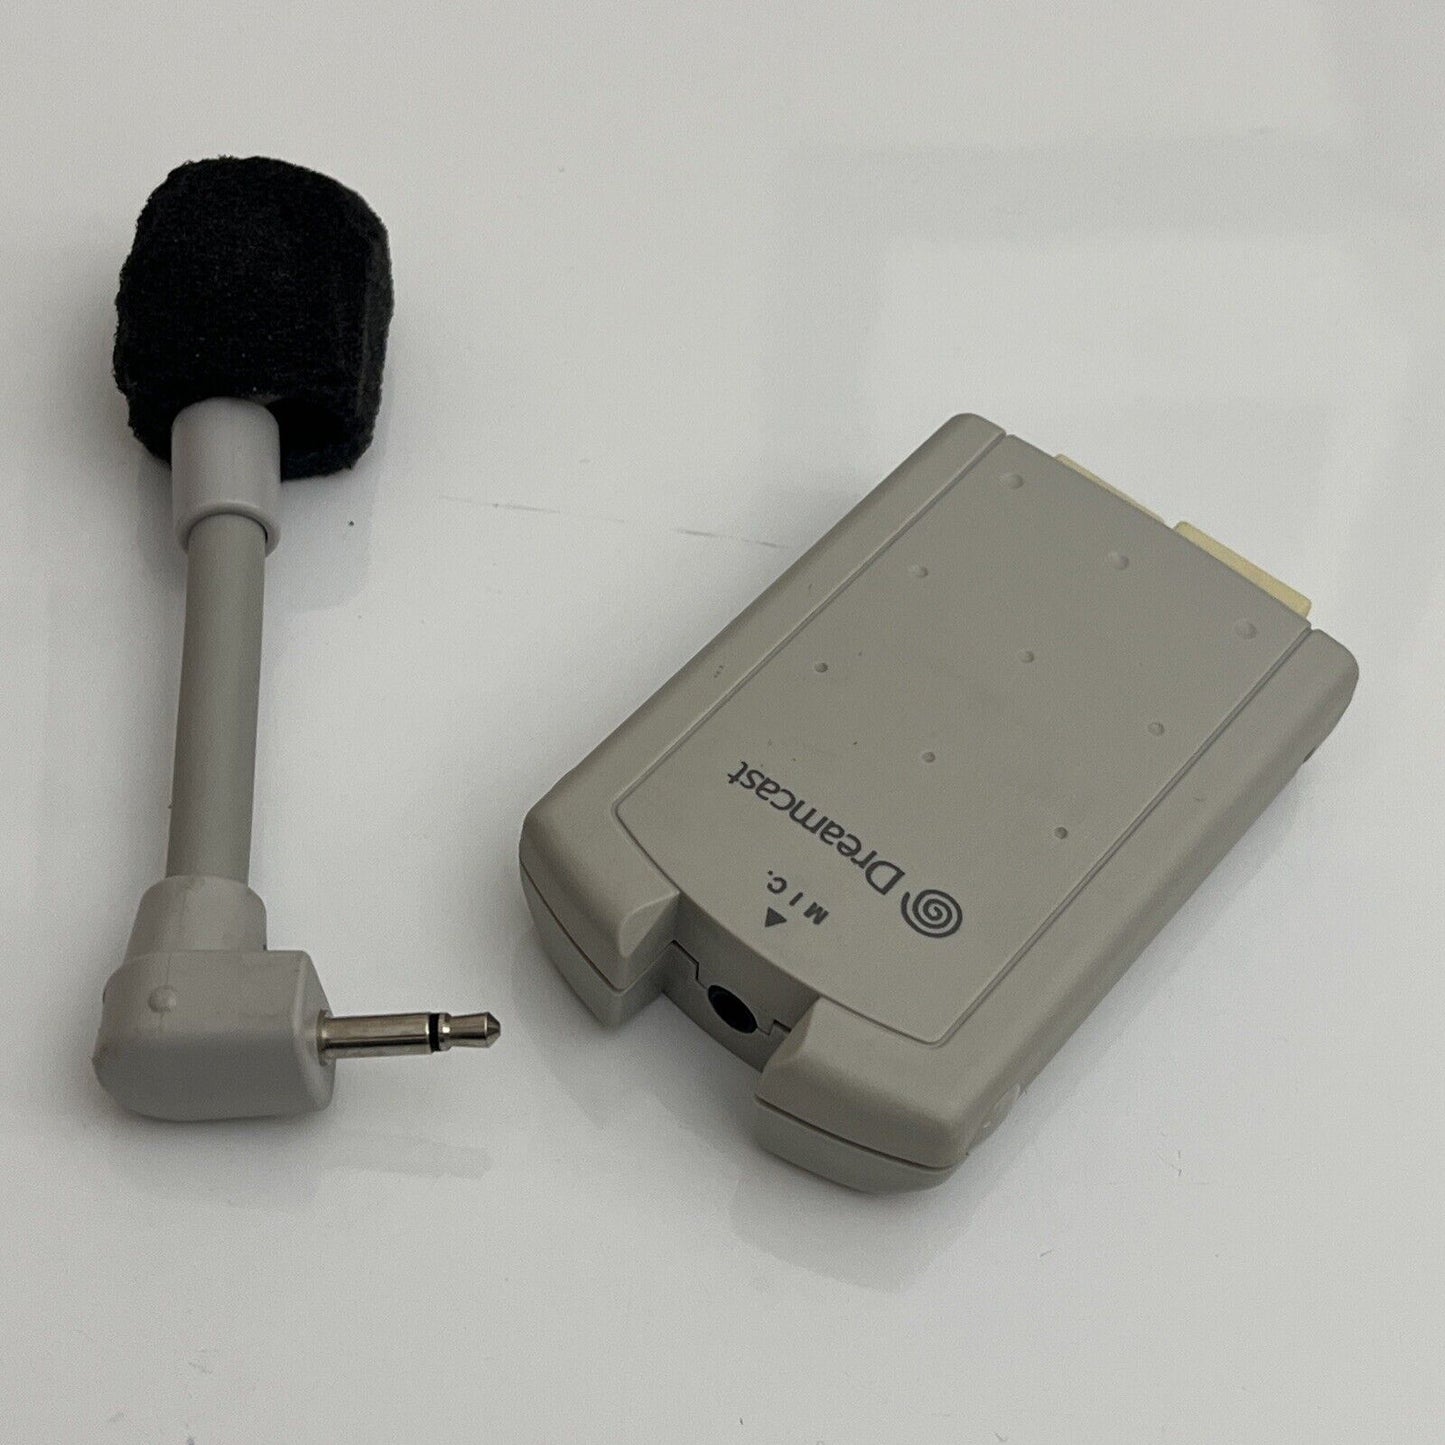 Official Sega Dreamcast Microphone HKT-7200